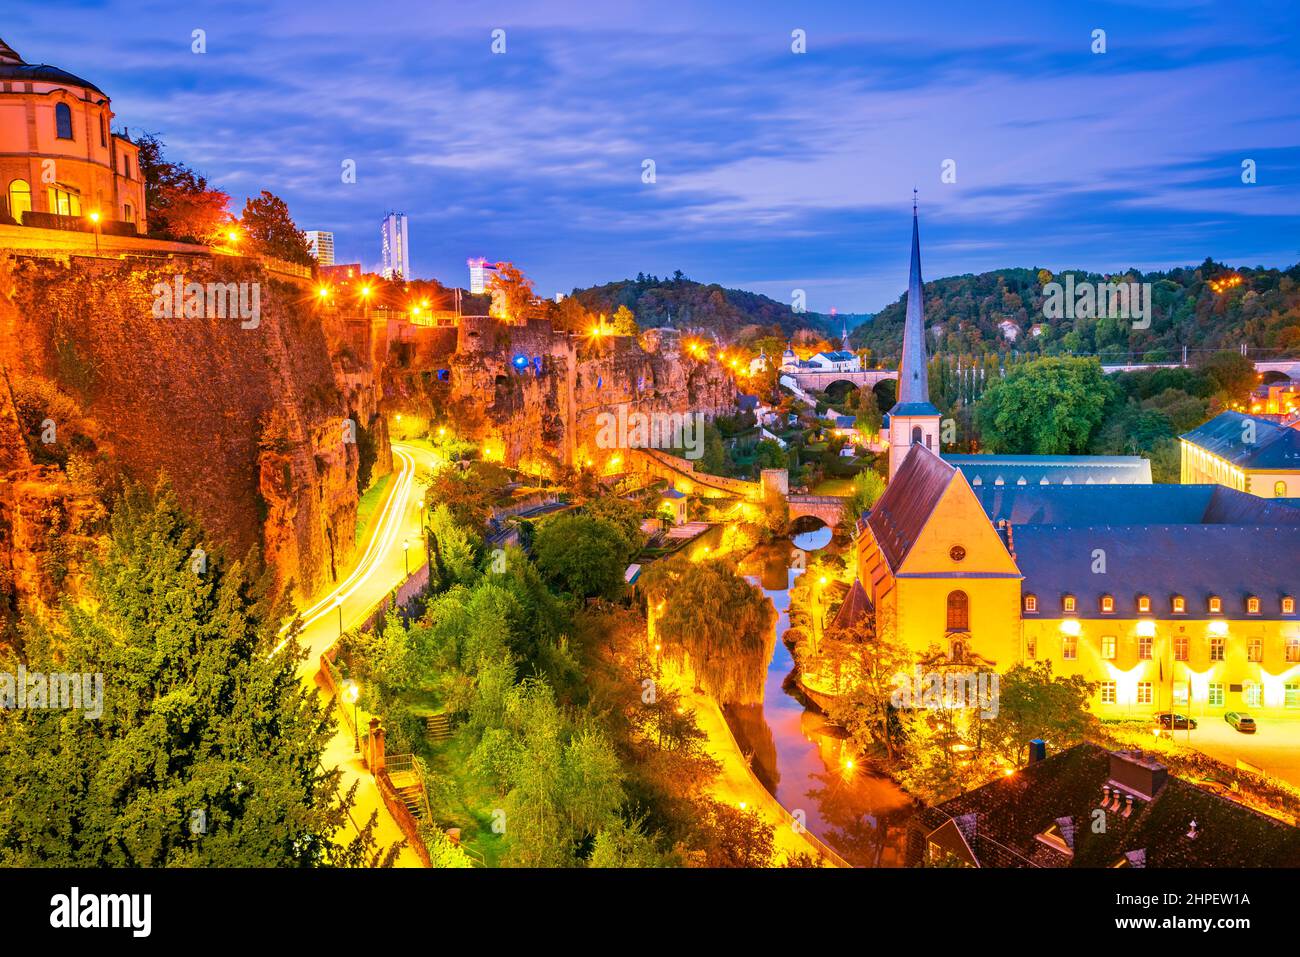 Lussemburgo, Lussemburgo. Immagine del paesaggio urbano della città vecchia sul fiume Alzette, skyline durante il bellissimo tramonto. Foto Stock